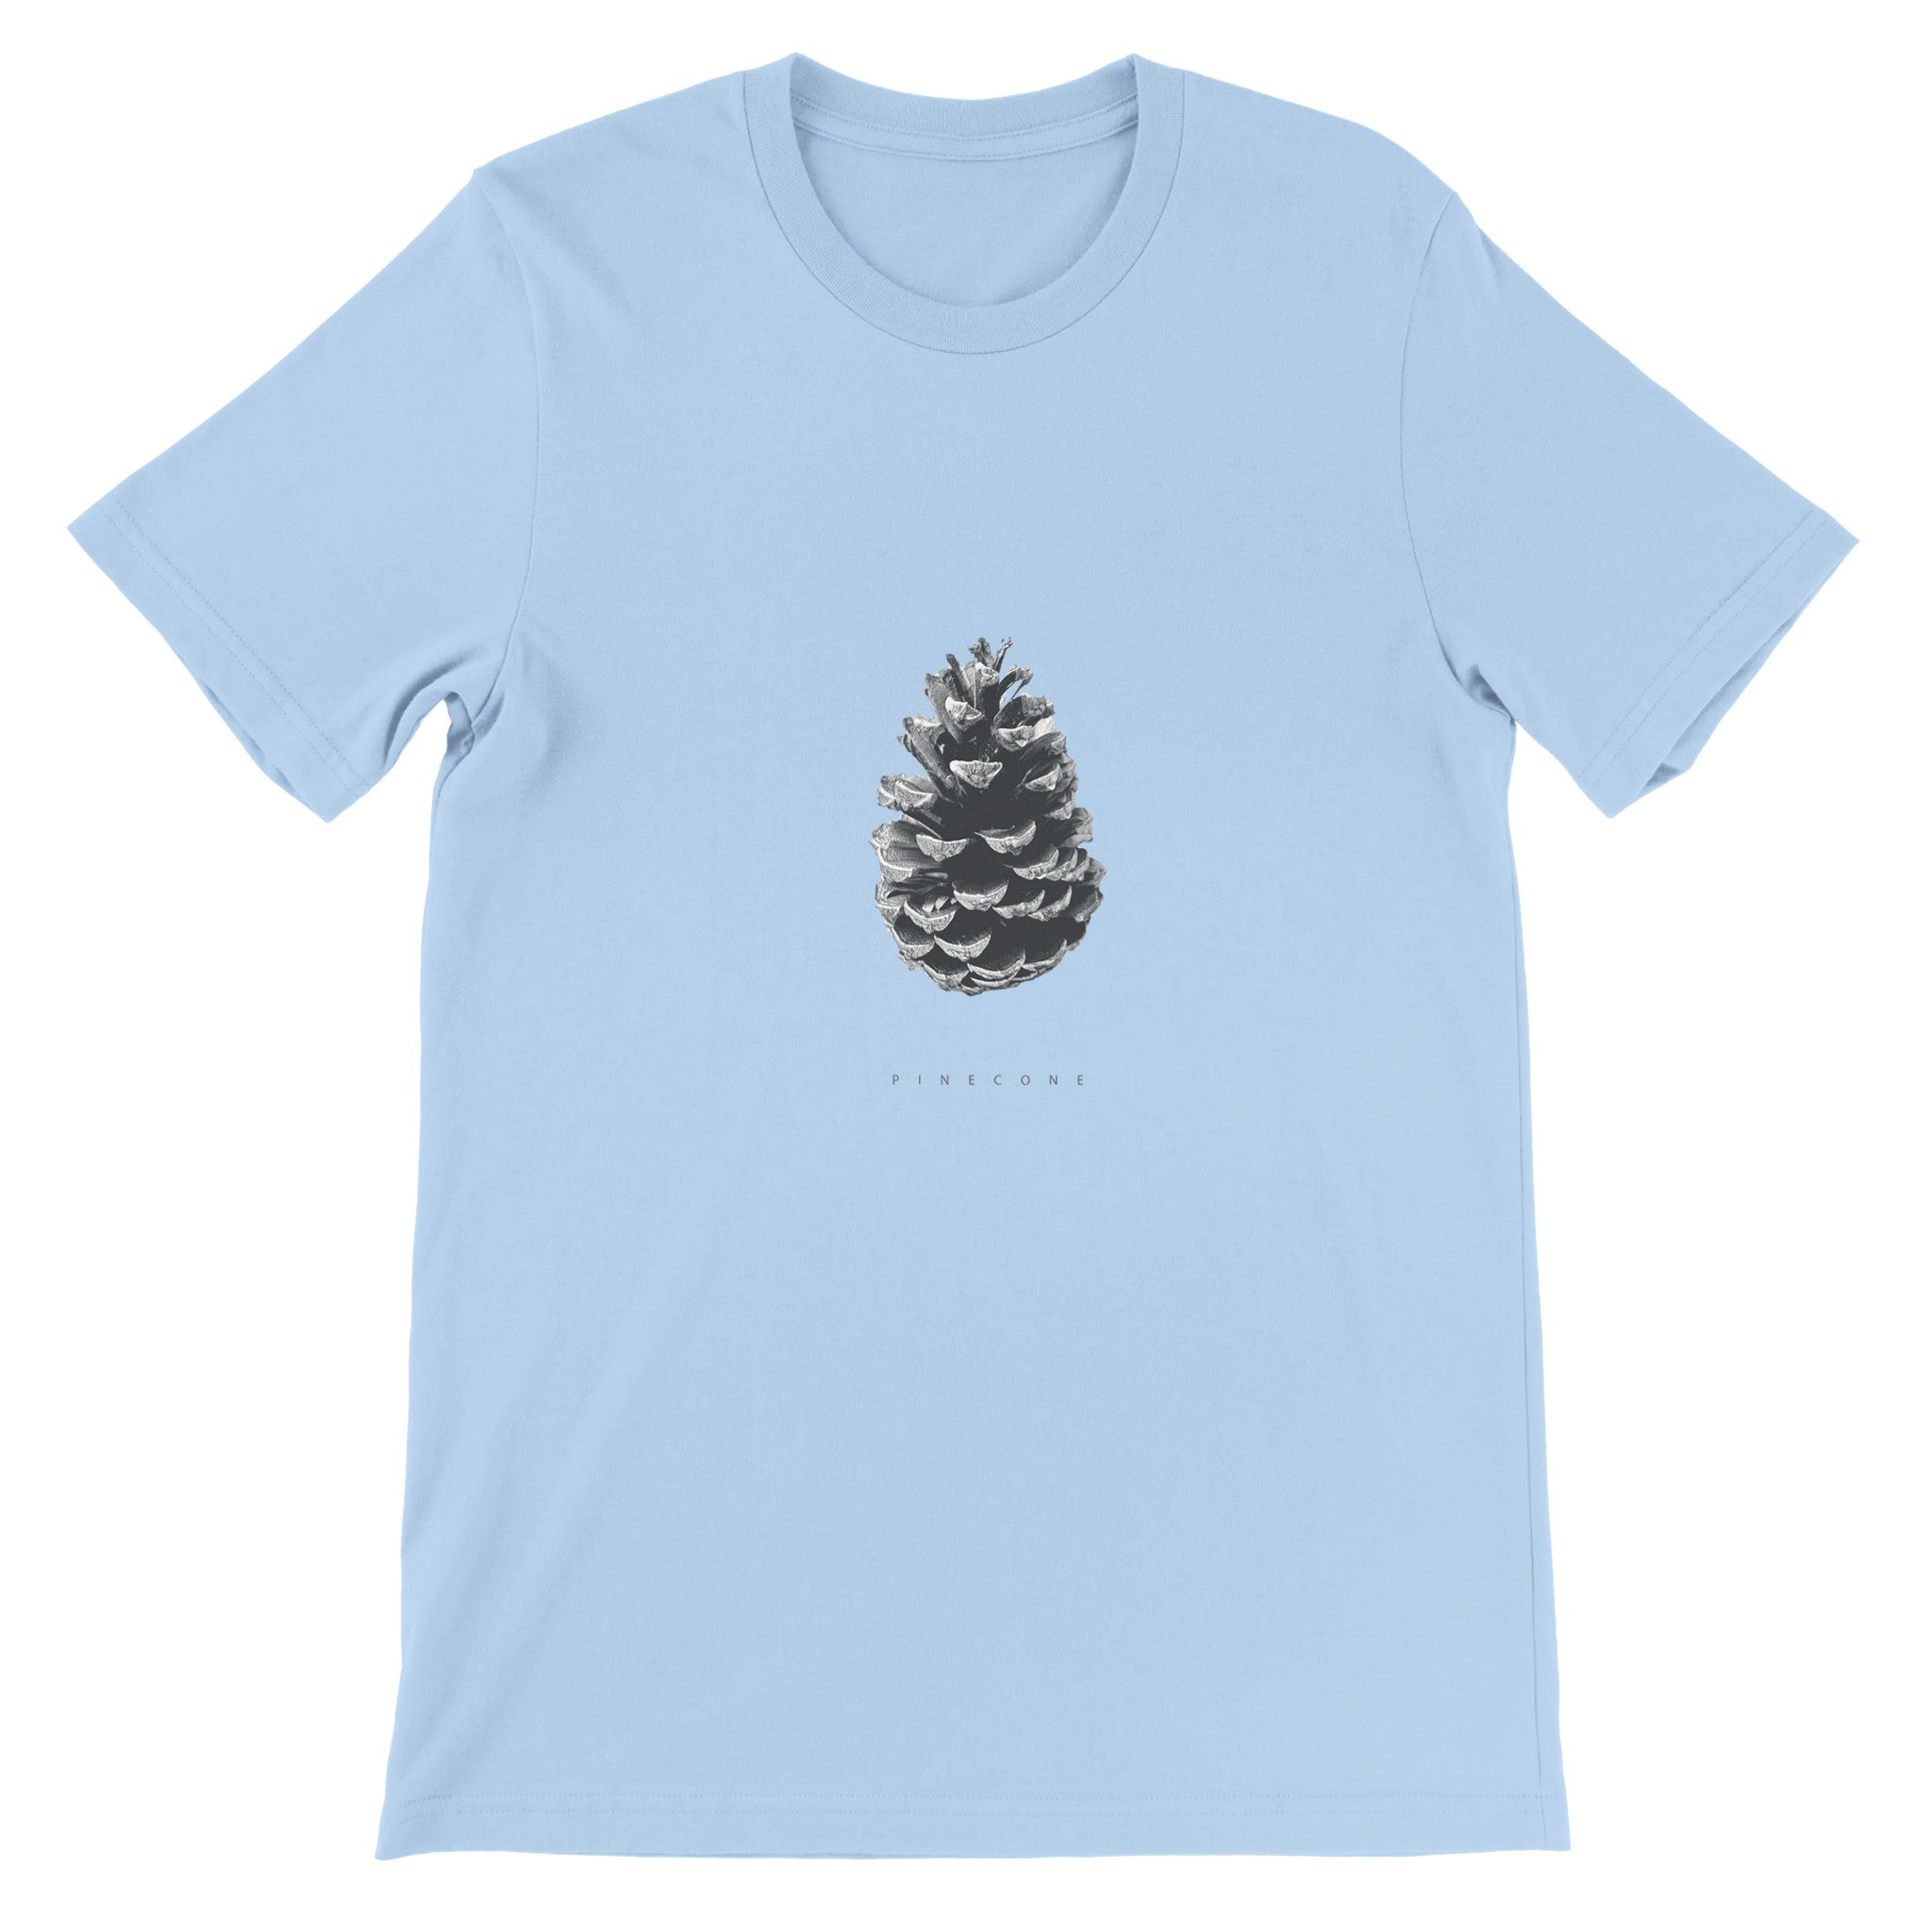 Pinecone Crewneck T-shirt - Optimalprint